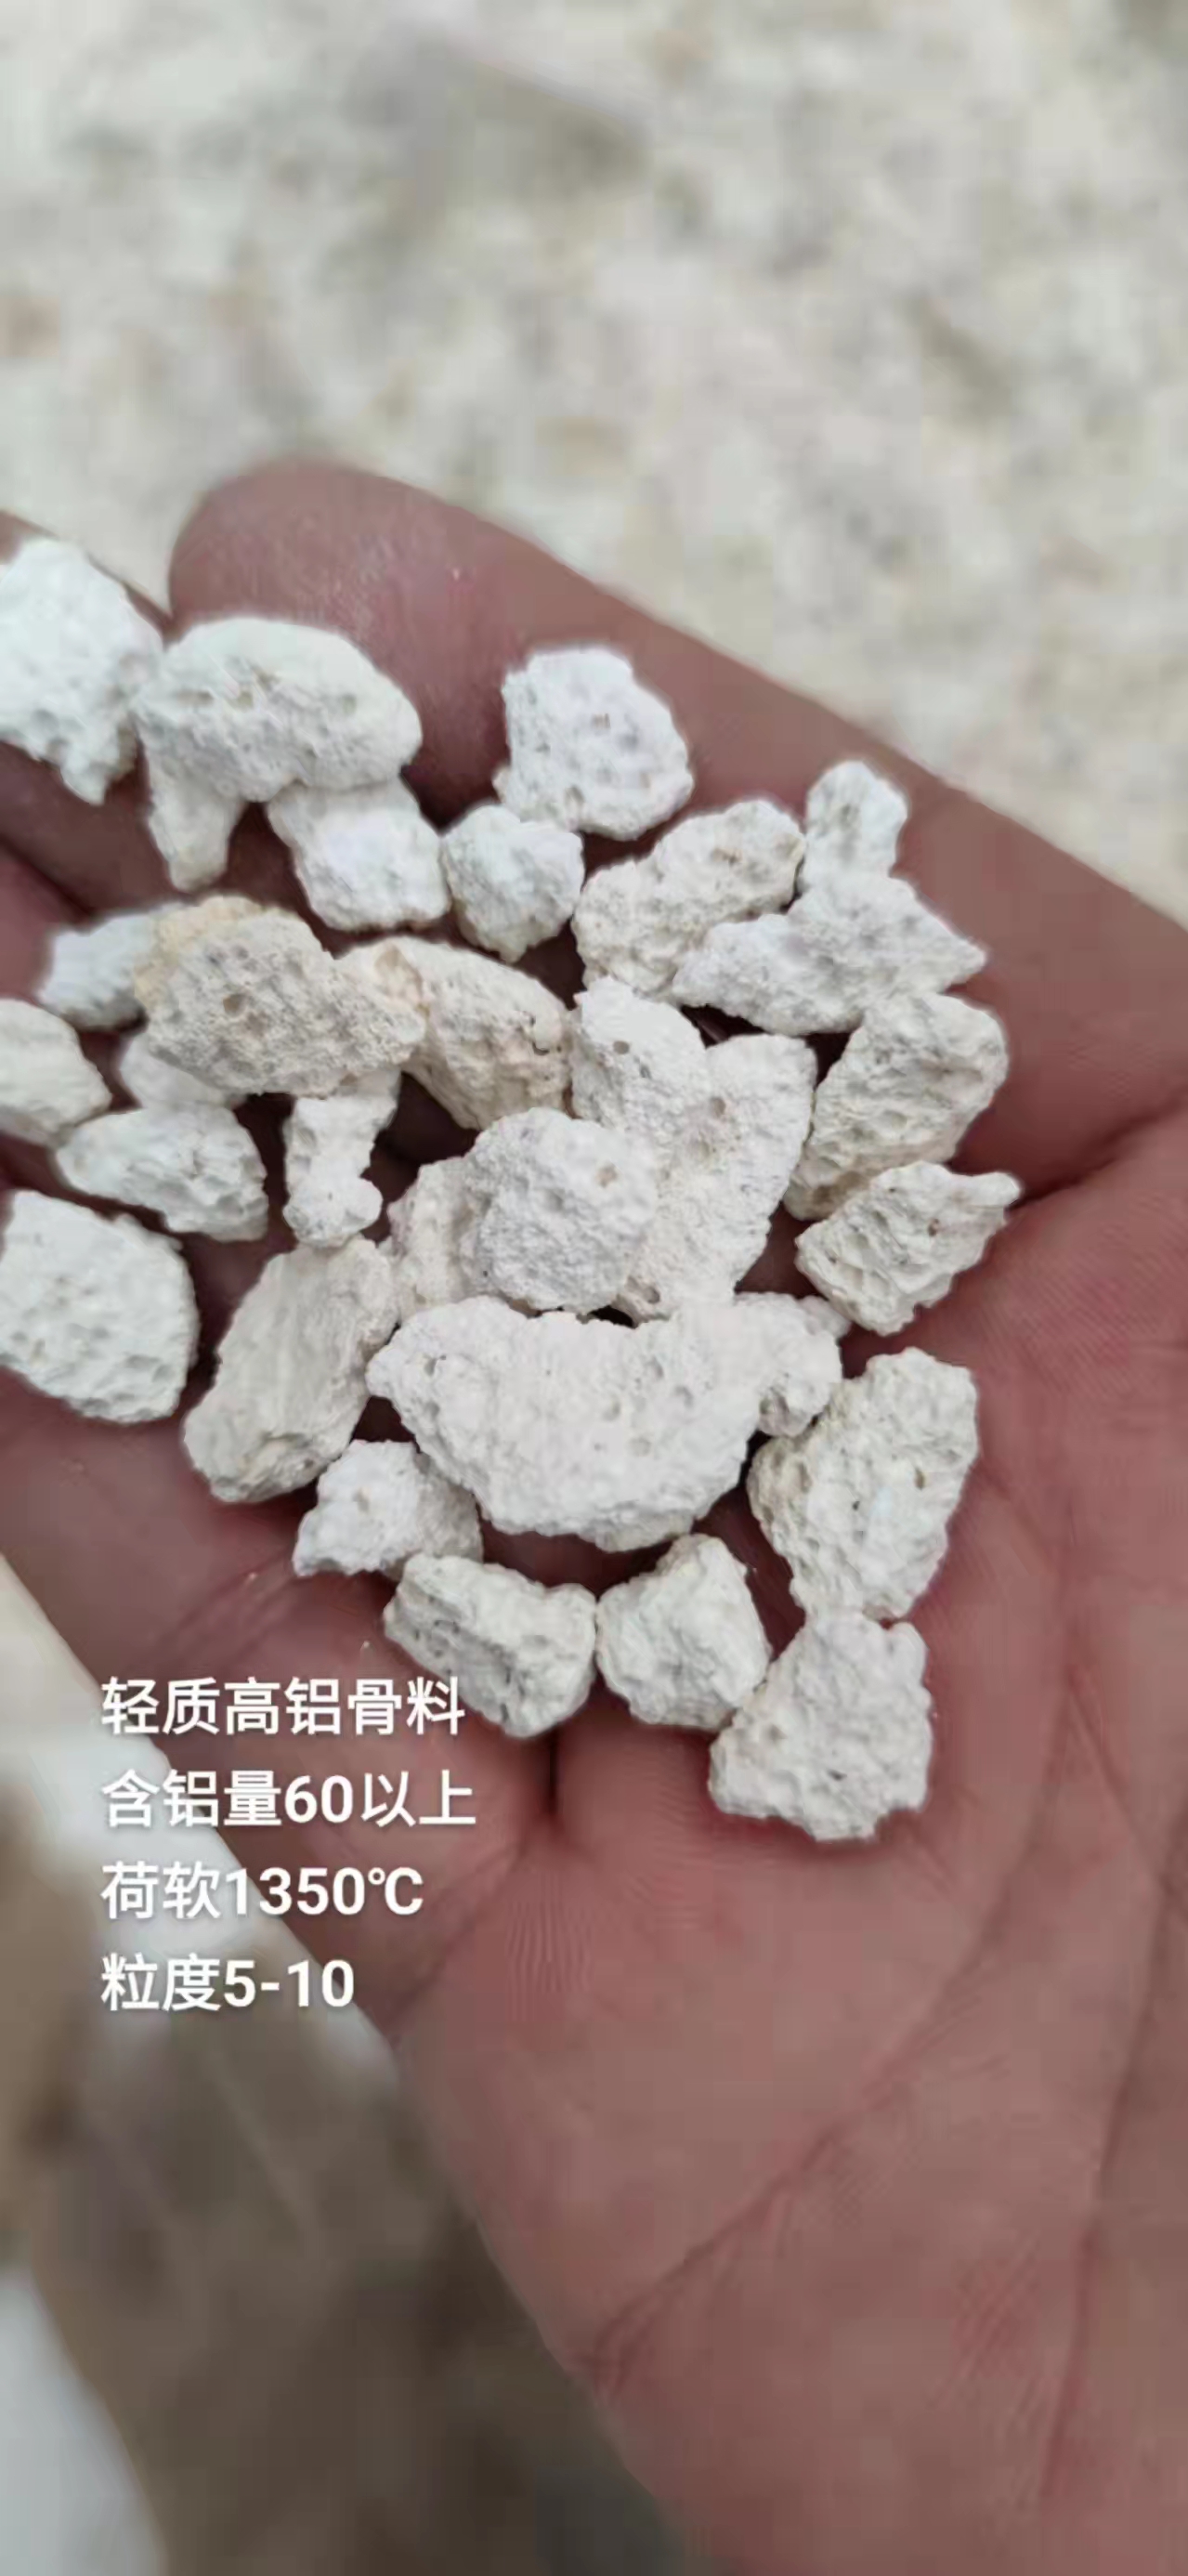 河南信德利 厂价销售 1-3 5-10 轻质高铝骨料 轻质骨料